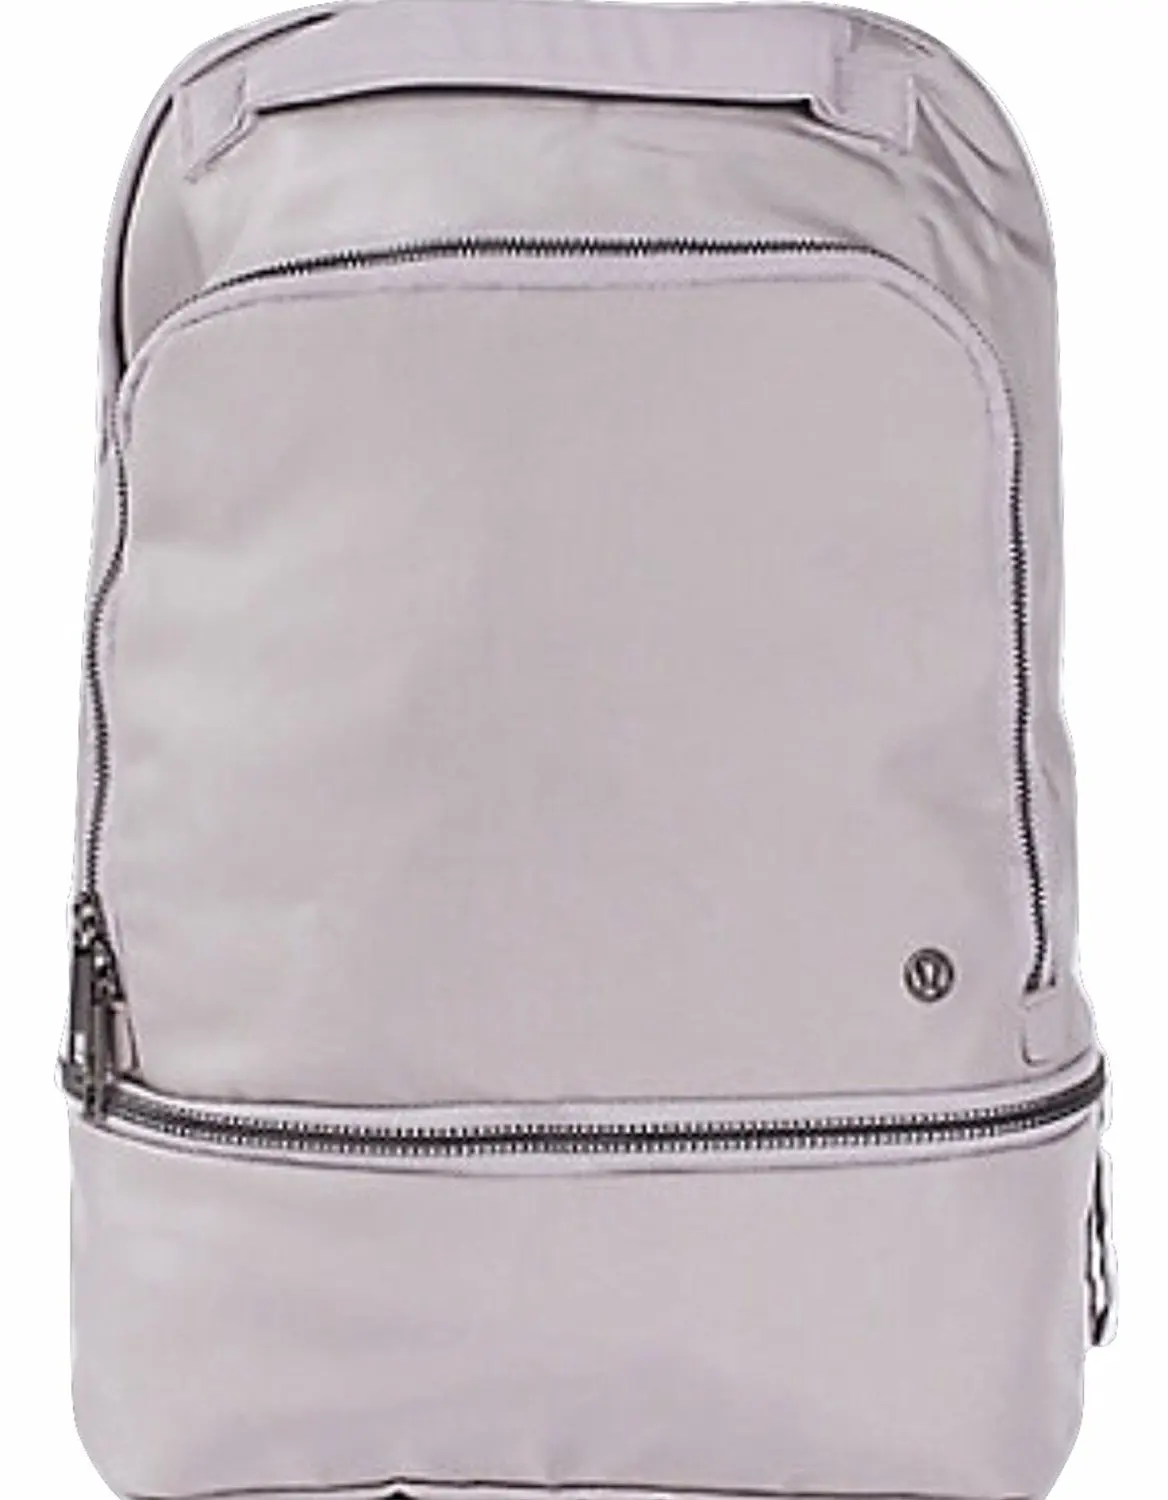 Cheap Lululemon Cruiser Backpack For 